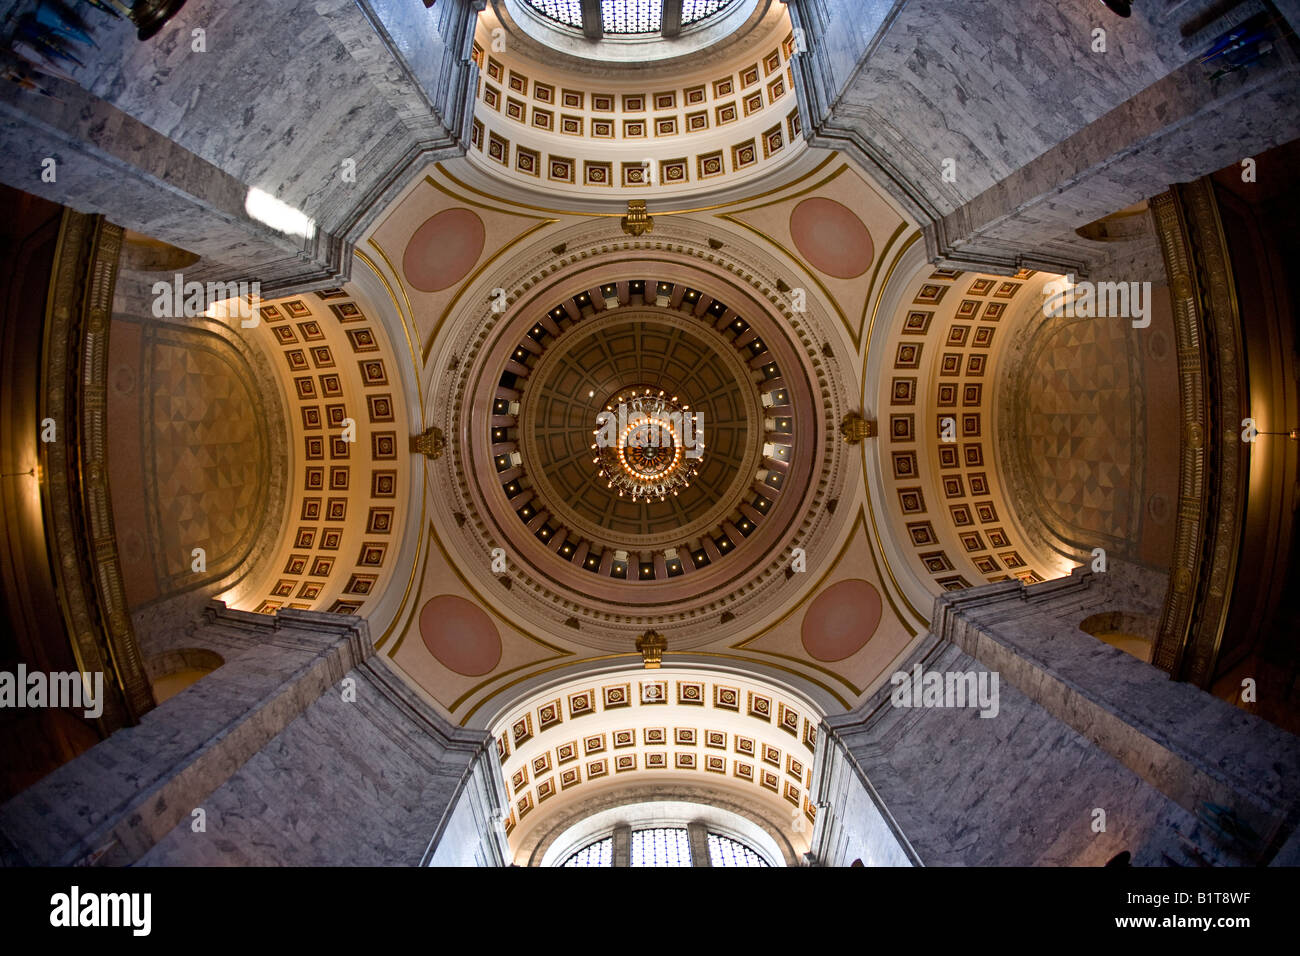 Interno della rotunda dello Stato di Washington edificio legislativo nella città di Olympia progettato da Walter Wilder e Harry White Foto Stock